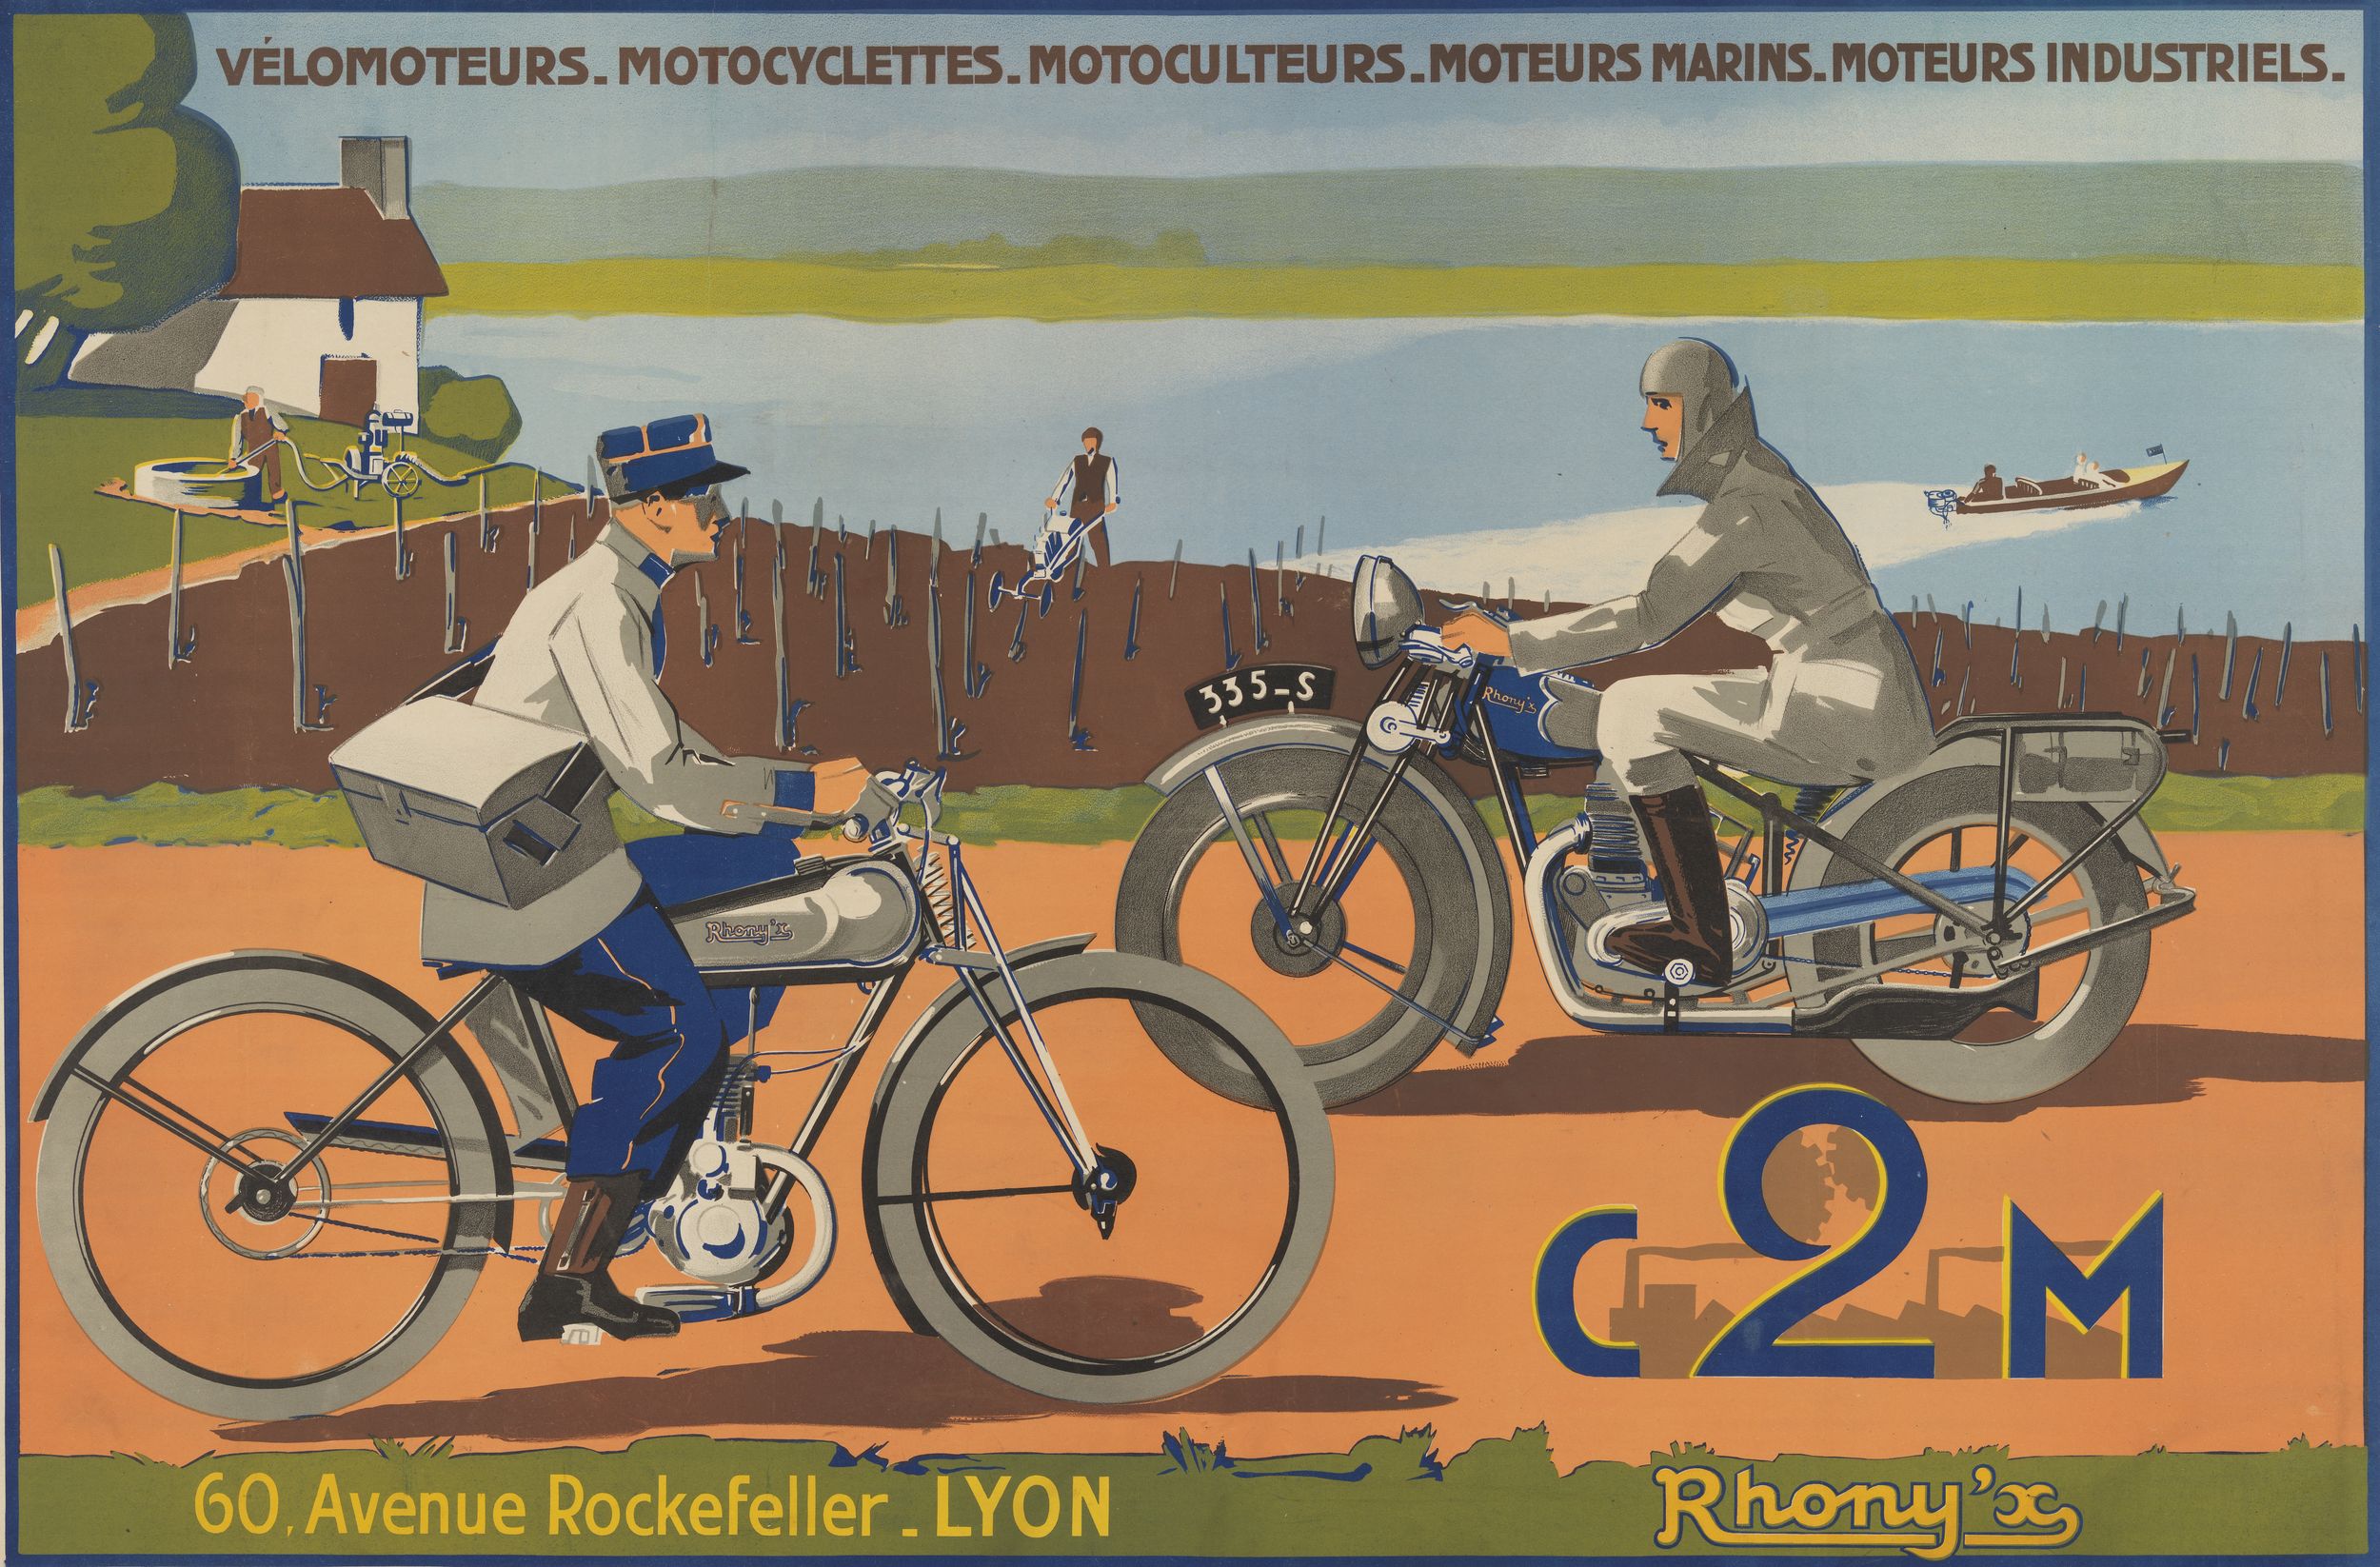 C2M Rhony'x : affiche publicitaire (lithographie couleur) très grand format (1933, cote : 7FI/2452)